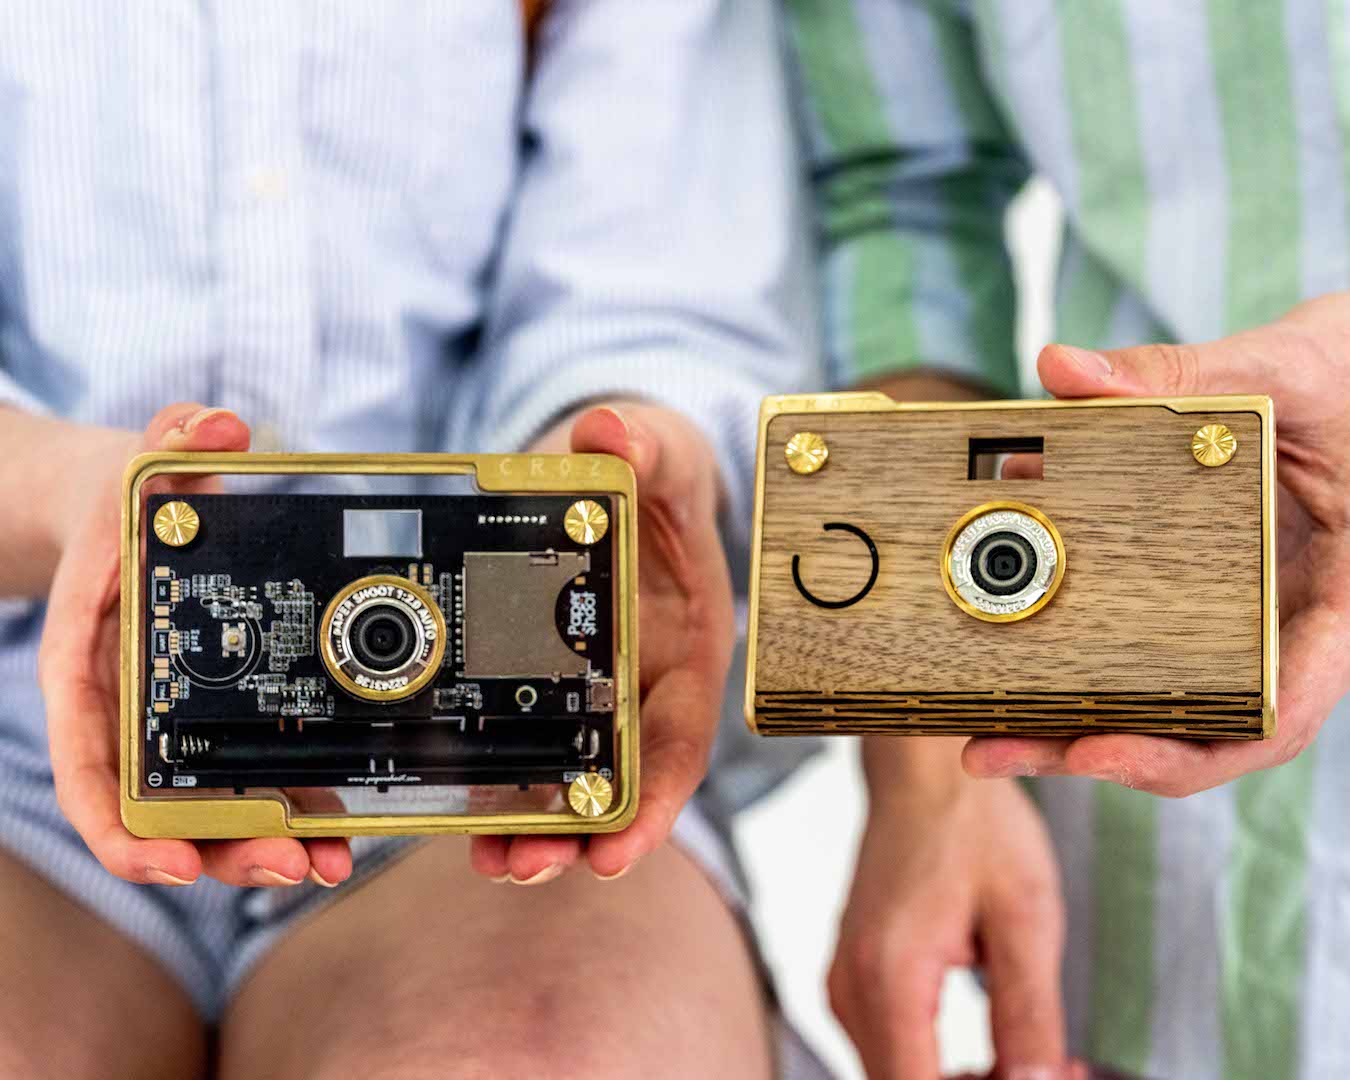 Paper Shoot Camera, Eco-Friendly Cameras